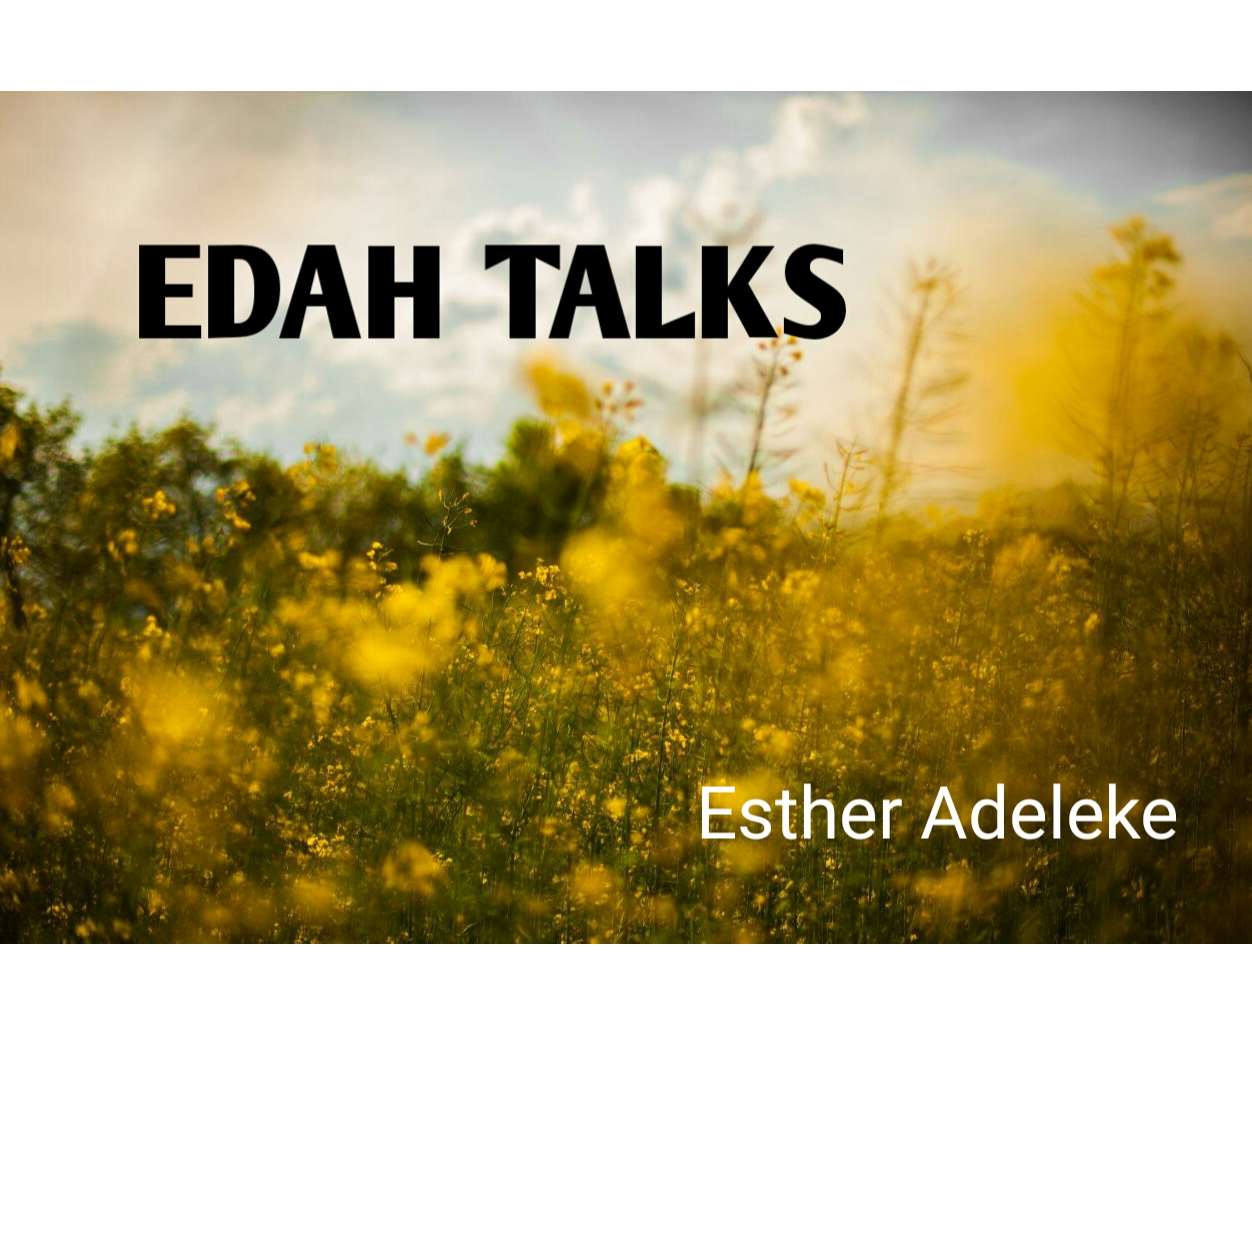 EDAH TALKS